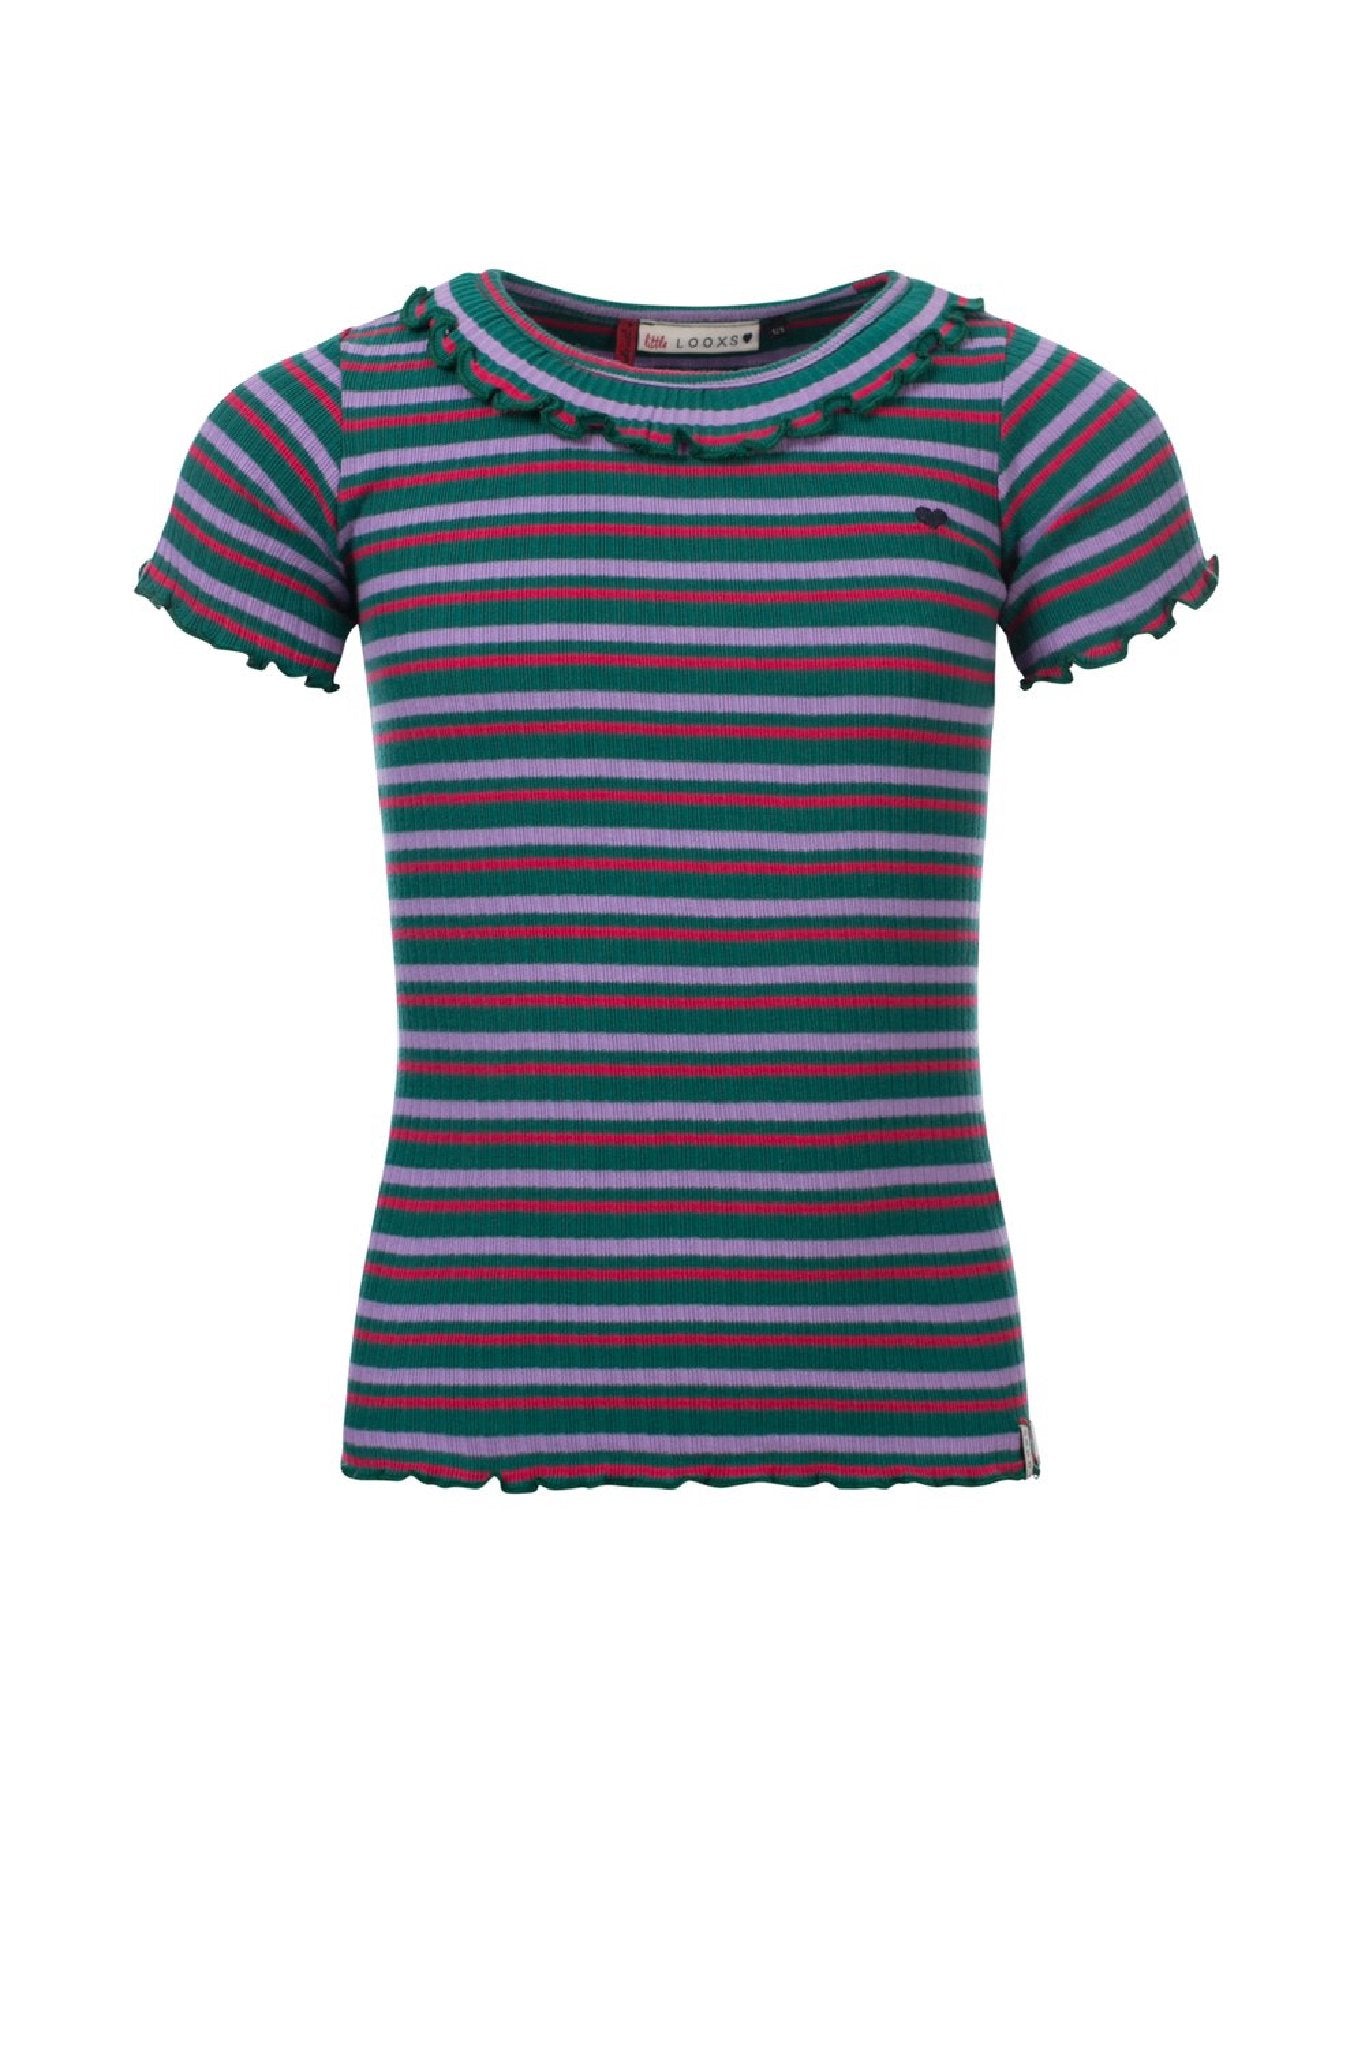 Meisjes Little rib t-shirt s.slee van LOOXS Little in de kleur Funky Ao in maat 128.